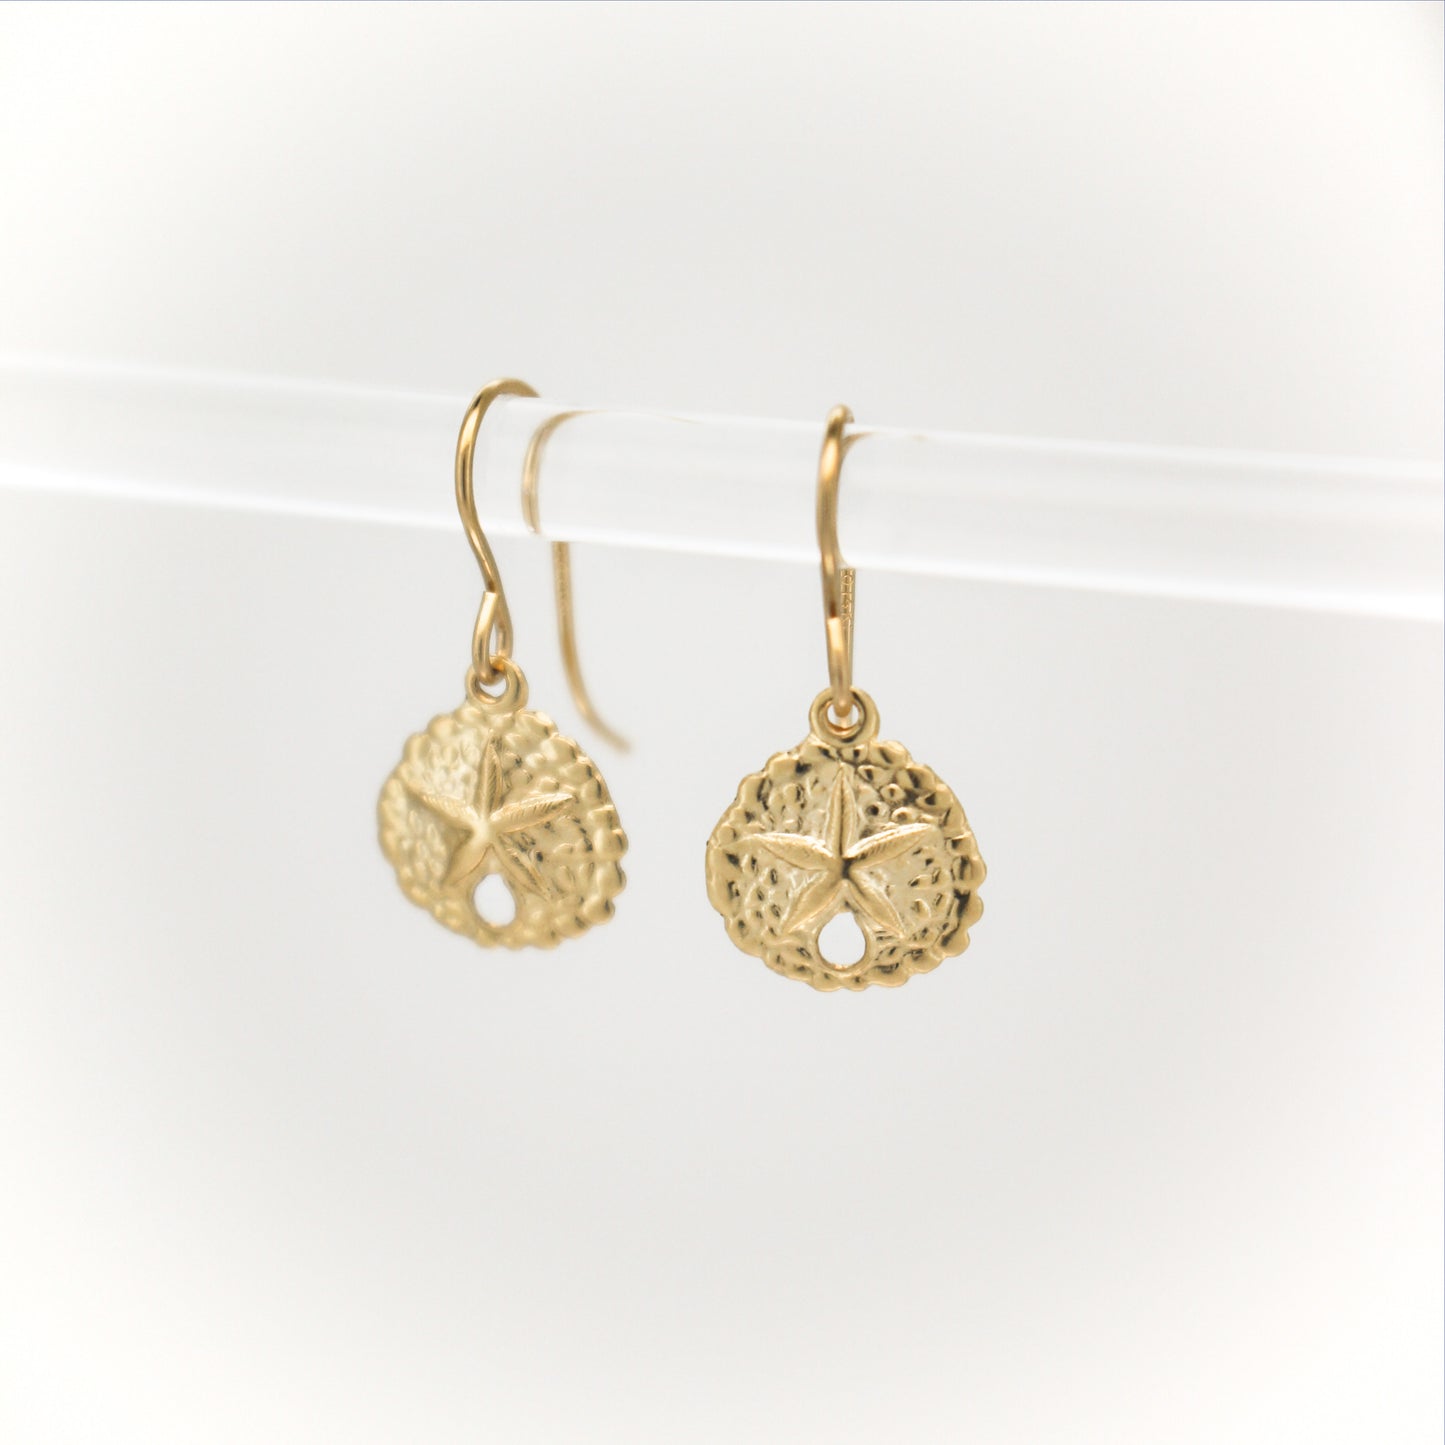 Gold Filled Shell Pearls Earrings ∙ Sand Dollar Charms ∙ Wedding Jewelry ∙ Dangle Earrings ∙ Starfish Seashell Earrings Waterproof